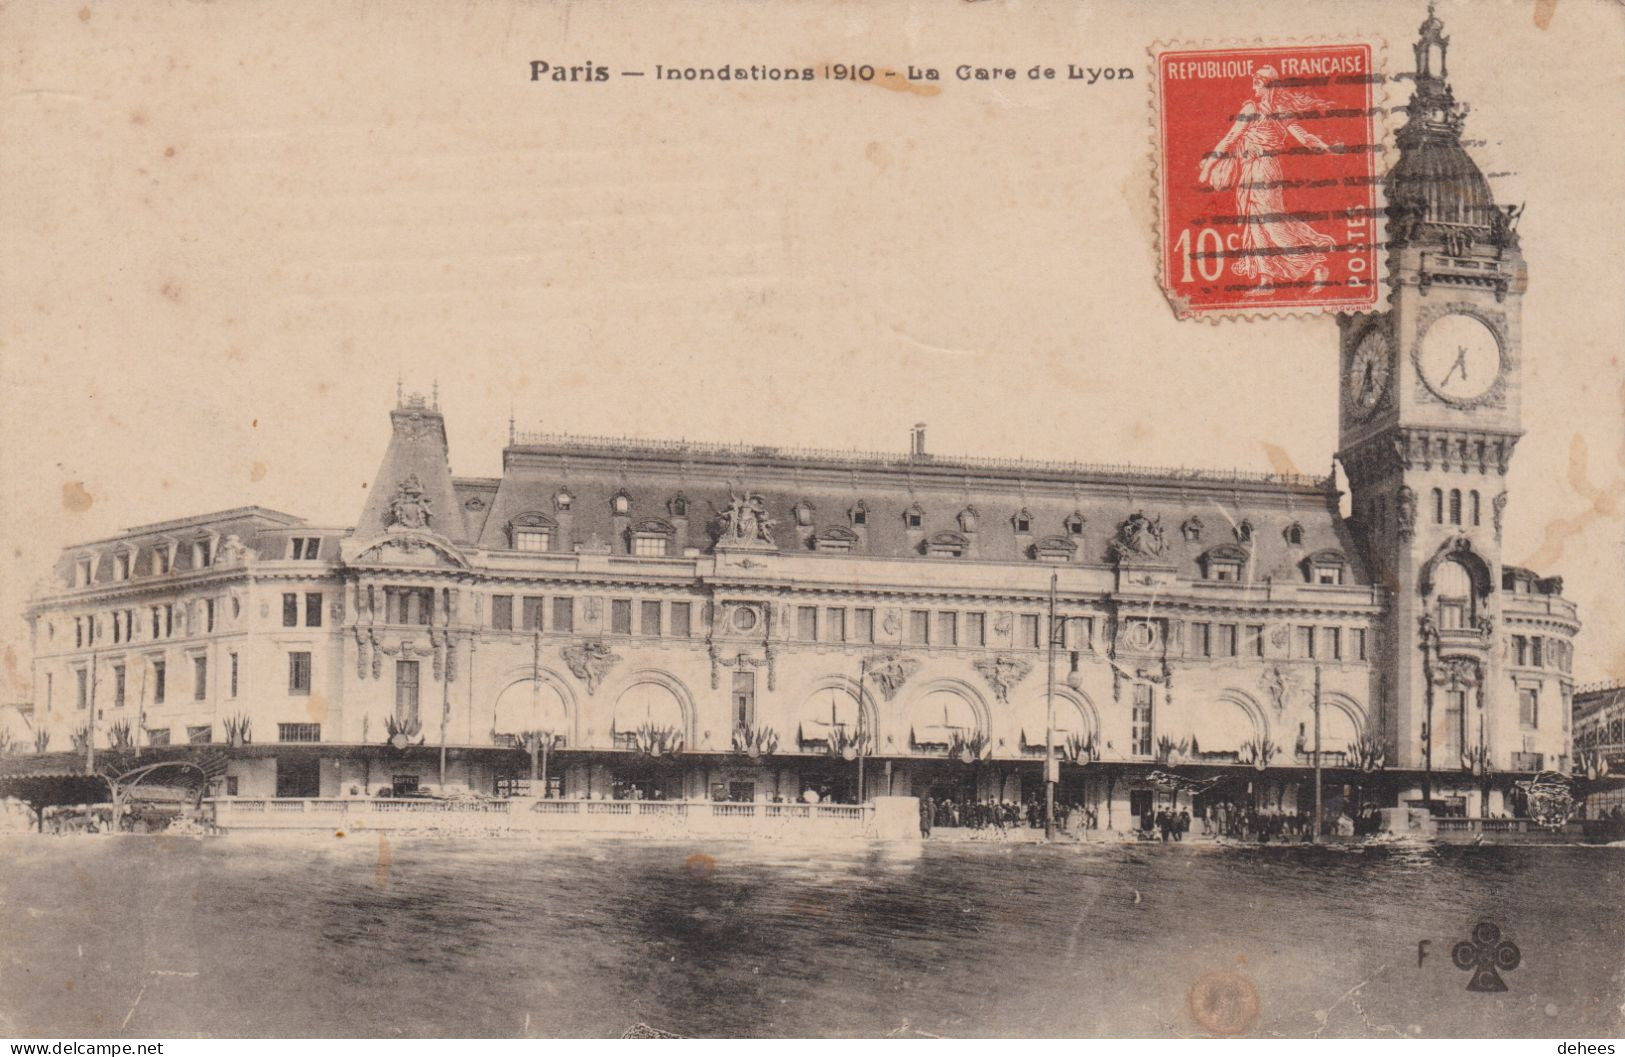 75 - Paris - Inondations Janvier 1910 - Gare De Lyon - Paris Flood, 1910